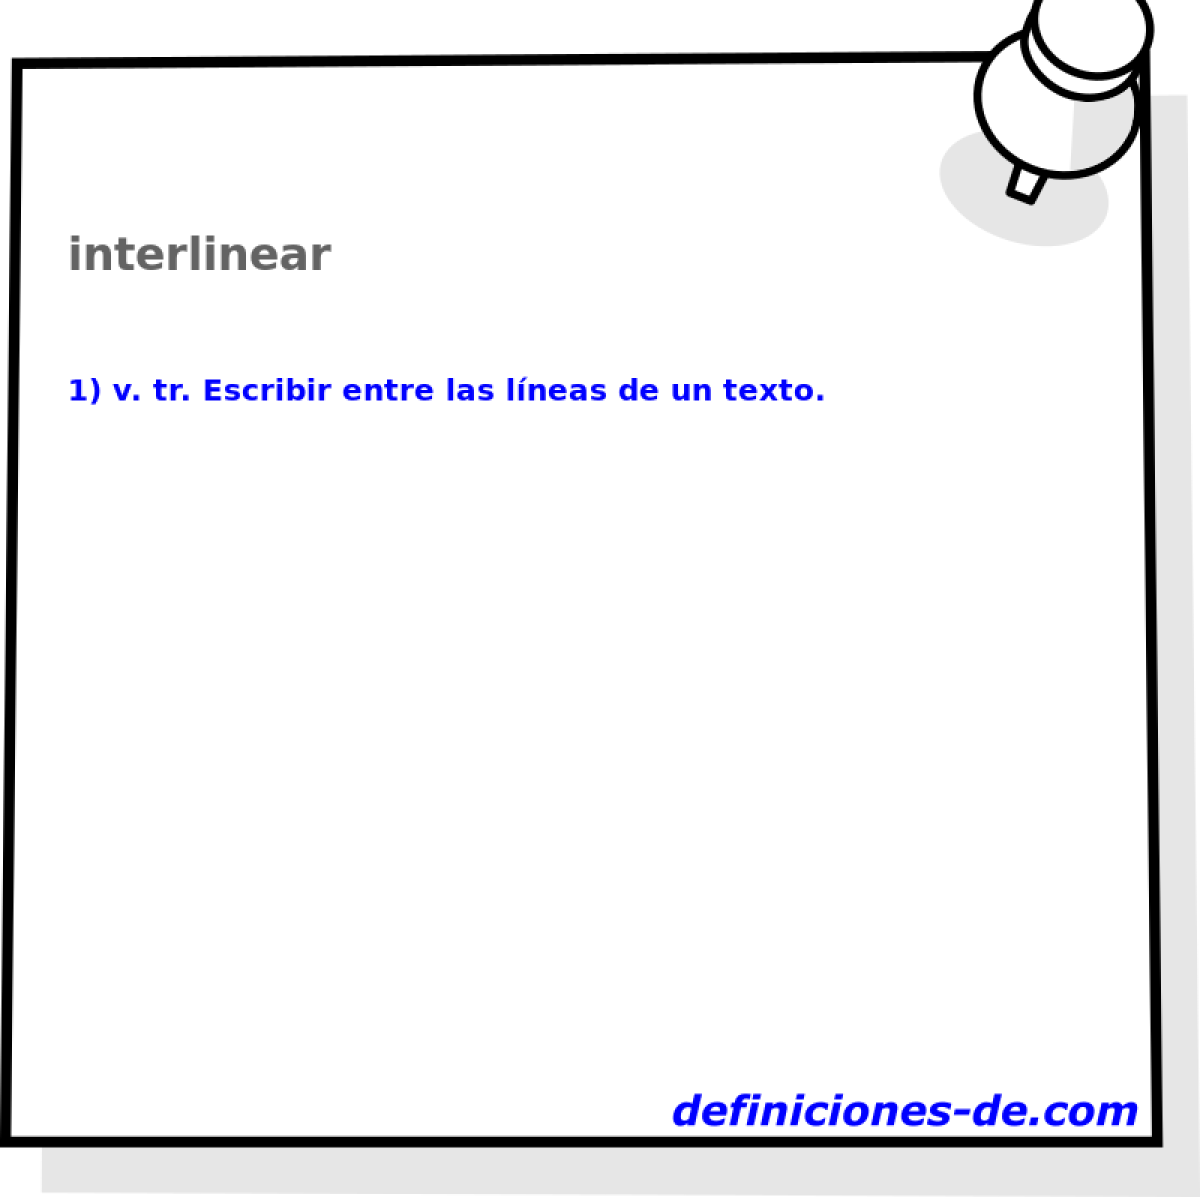 interlinear 